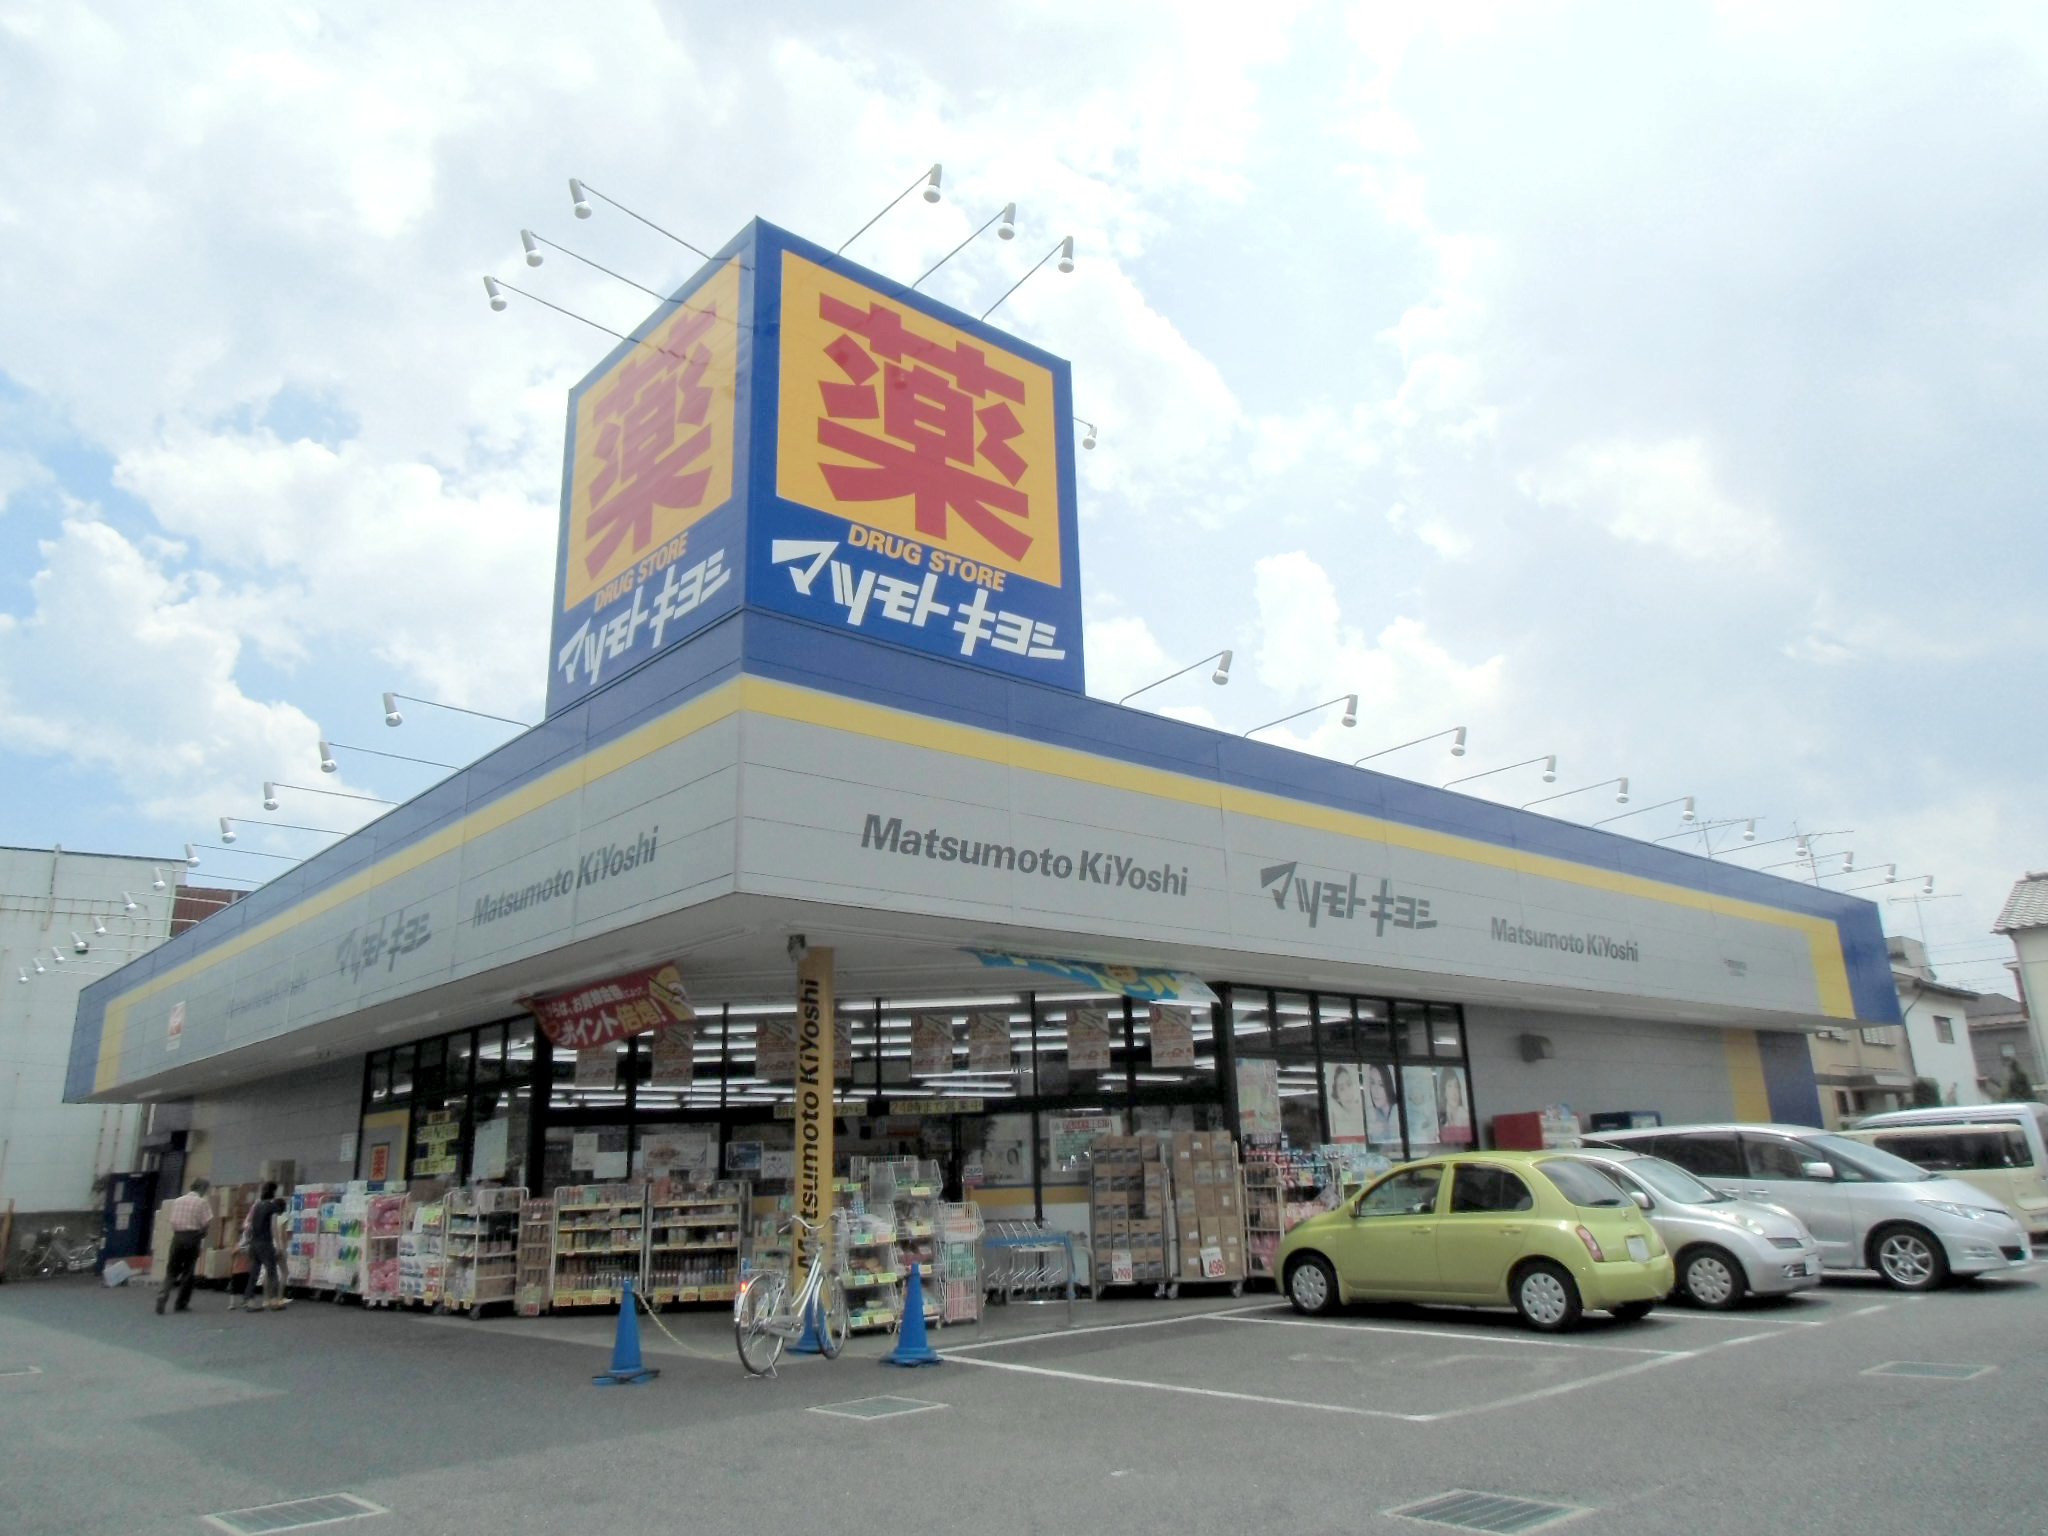 Dorakkusutoa. Drugstore Matsumotokiyoshi Chiba Wakamatsucho shop 678m until (drugstore)